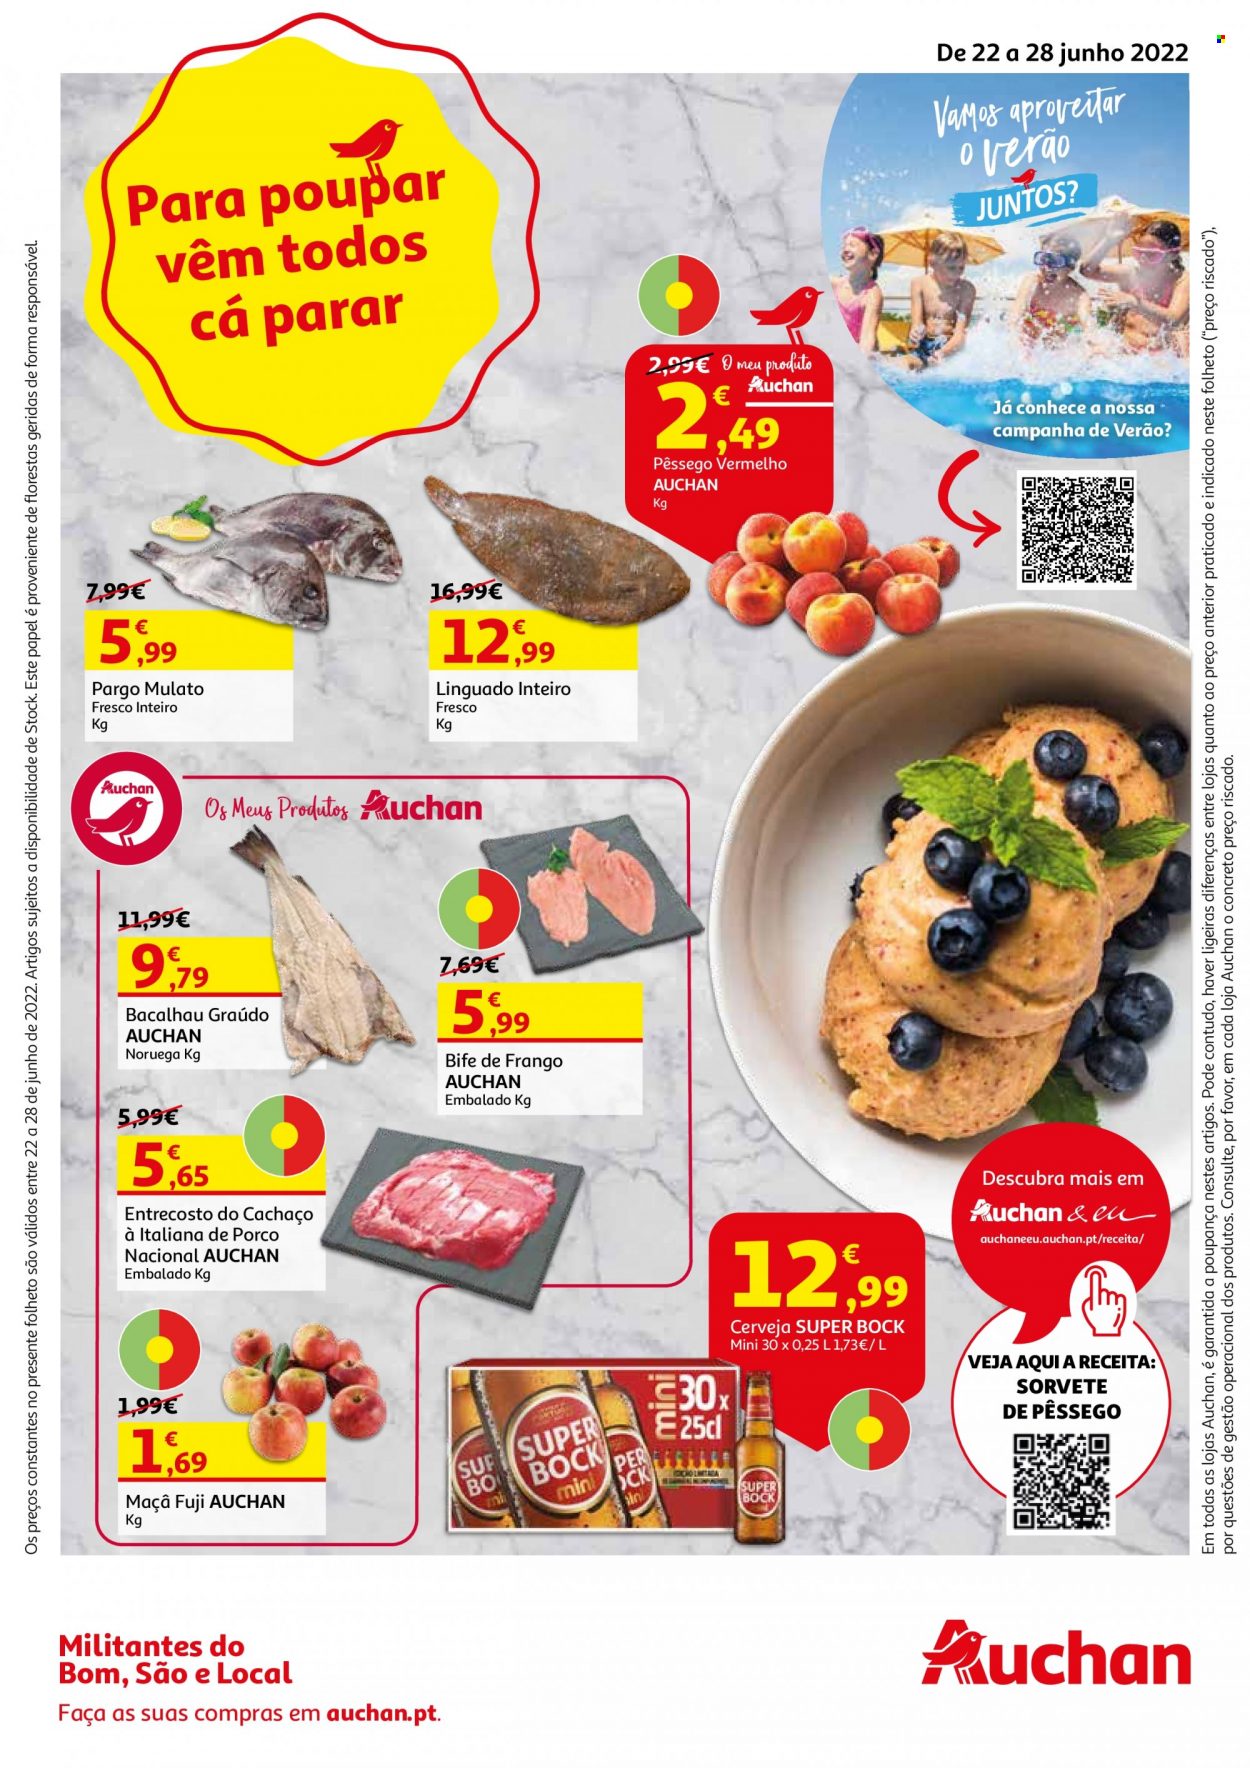 Folheto Auchan - 22.6.2022 - 28.6.2022 - Produtos em promoção - Super Bock, cerveja, maçã, bife, bife de frango, bacalhau, linguado, sorvete. Página 1.